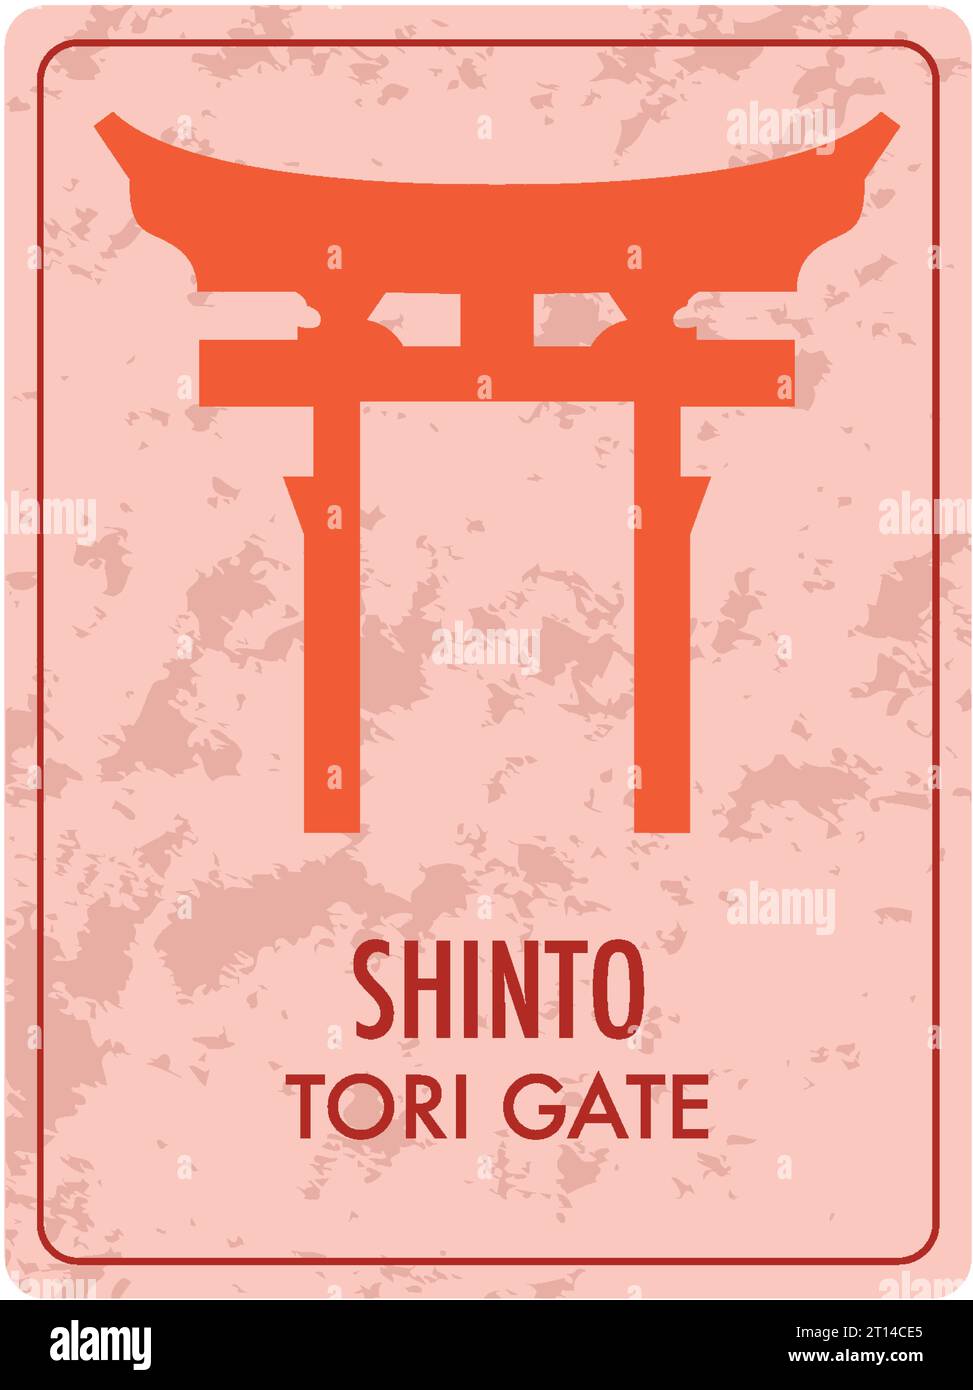 Eine Vektor-Cartoon-Illustration eines Tori-Tores, das die Shinto-Religion symbolisiert, auf einer leuchtenden roten Karte Stock Vektor